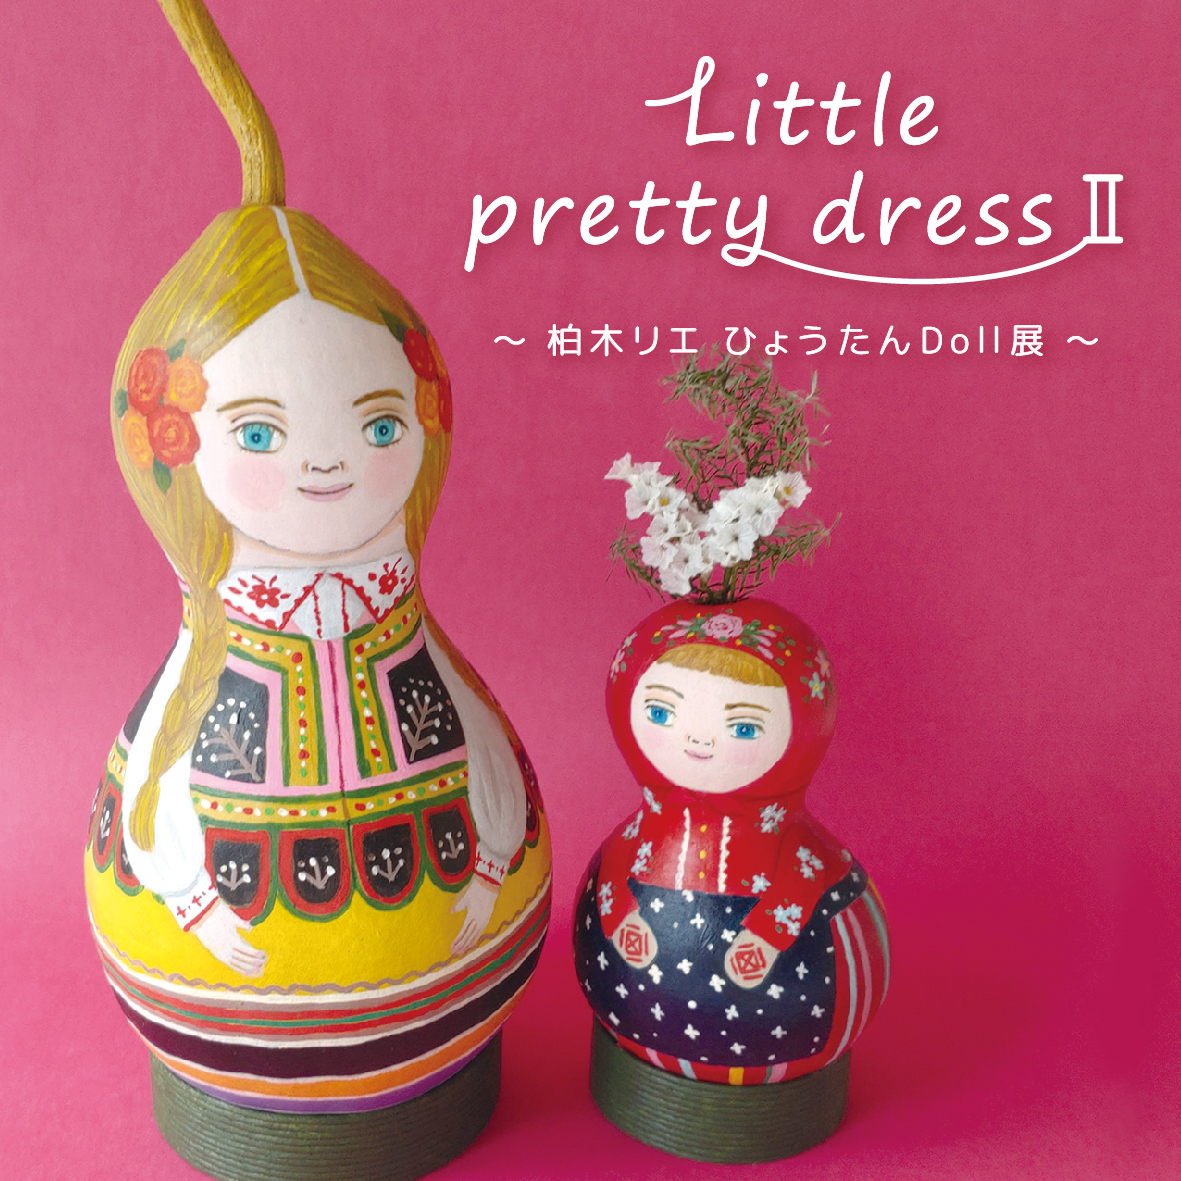 【イベント】「Little pretty dress Ⅱ」～ 柏木リエ ひょうたんDoll展 ～